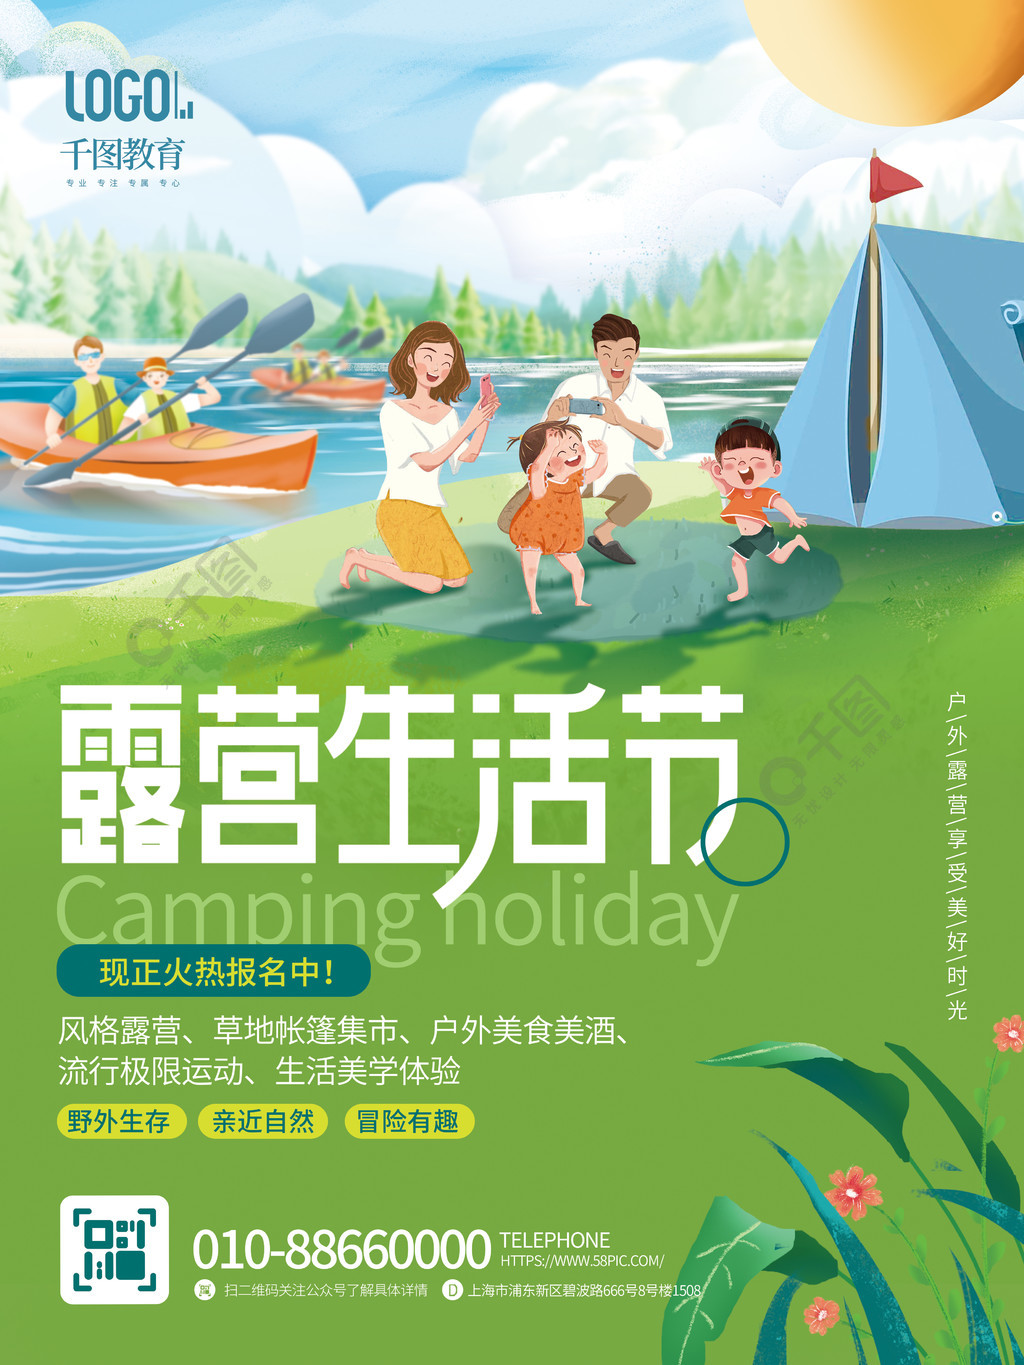 清新夏季周末假期户外露营主题活动介绍海报